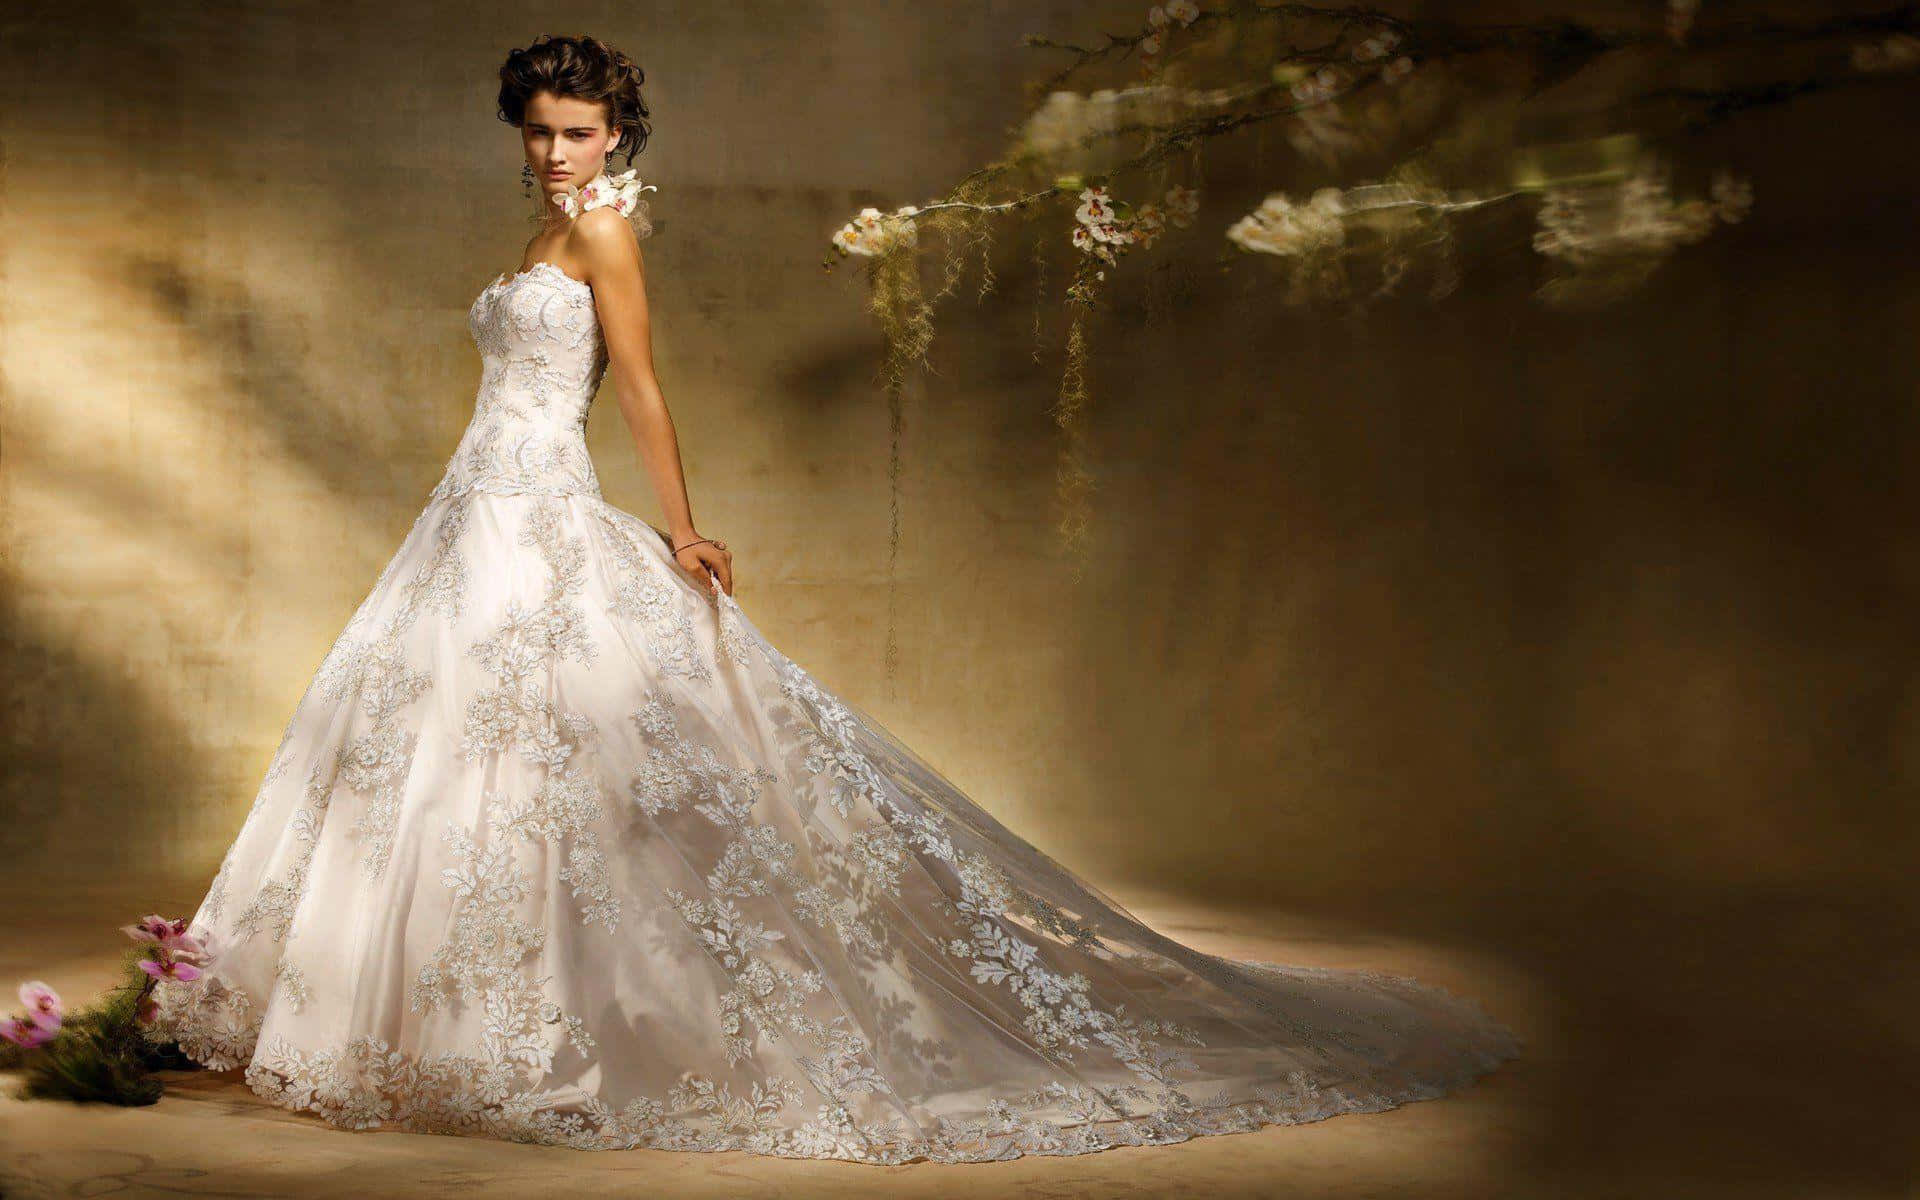 Elegant Bride in Stunning Wedding Gown